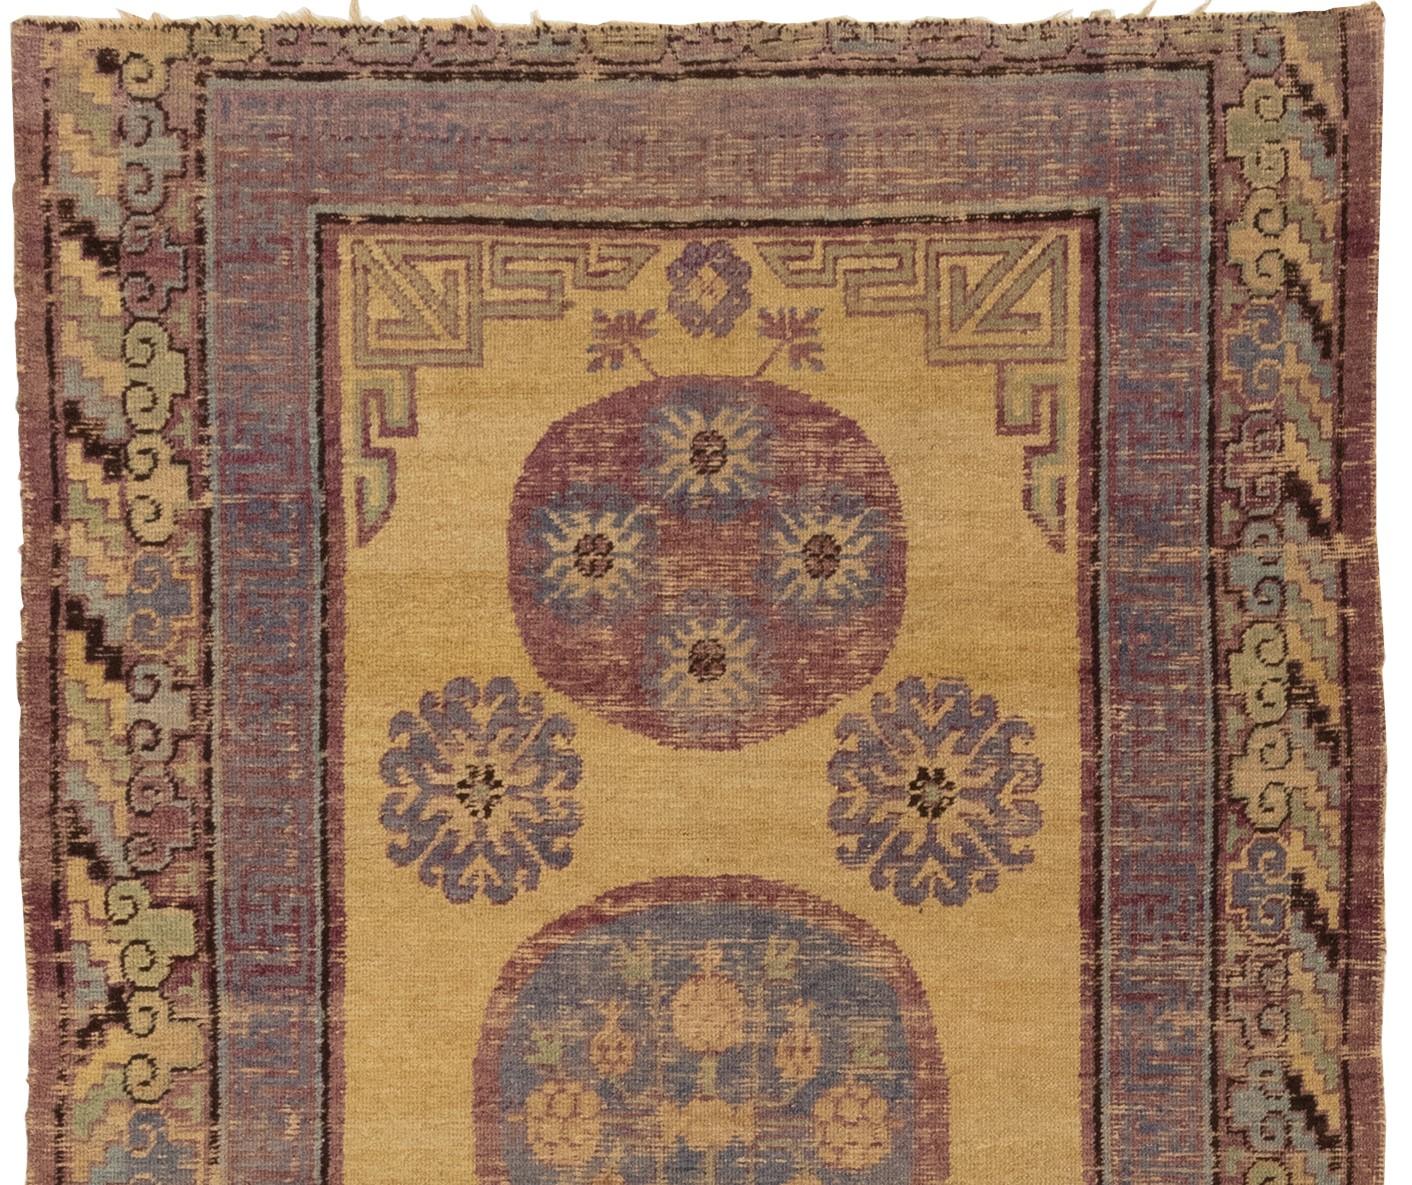 Dieser antike Khotan-Teppich aus Ostturkestan ist wirklich atemberaubend. Es ist klar, dass um 1900 viel Sorgfalt und Aufmerksamkeit in seine Herstellung geflossen ist, und die drei kreisförmigen Medaillons mit weiteren kreisförmigen Mustern innen